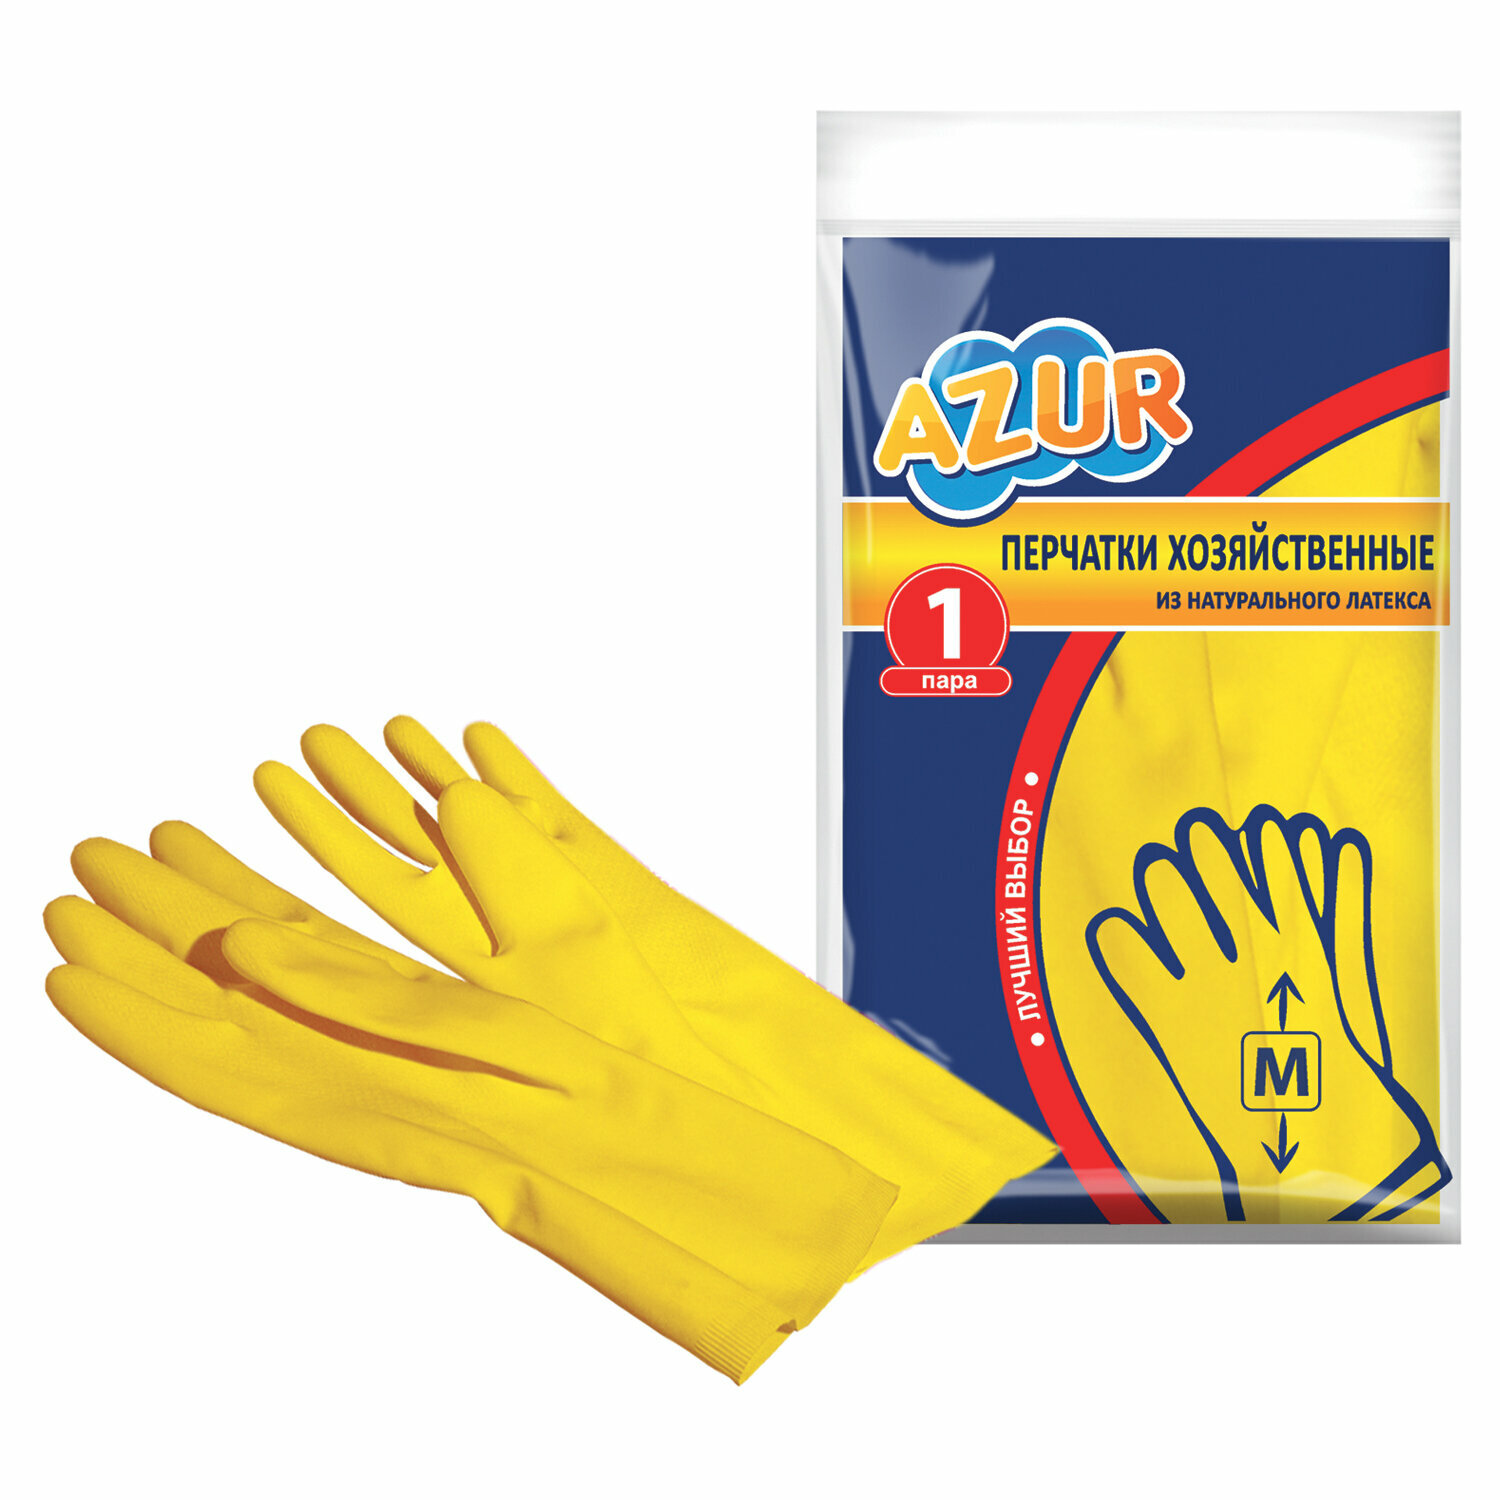 Перчатки с рифлеными пальцами Azur, размер M, 12 пар набор для уборки с вращающимся отжимом york azur 072800